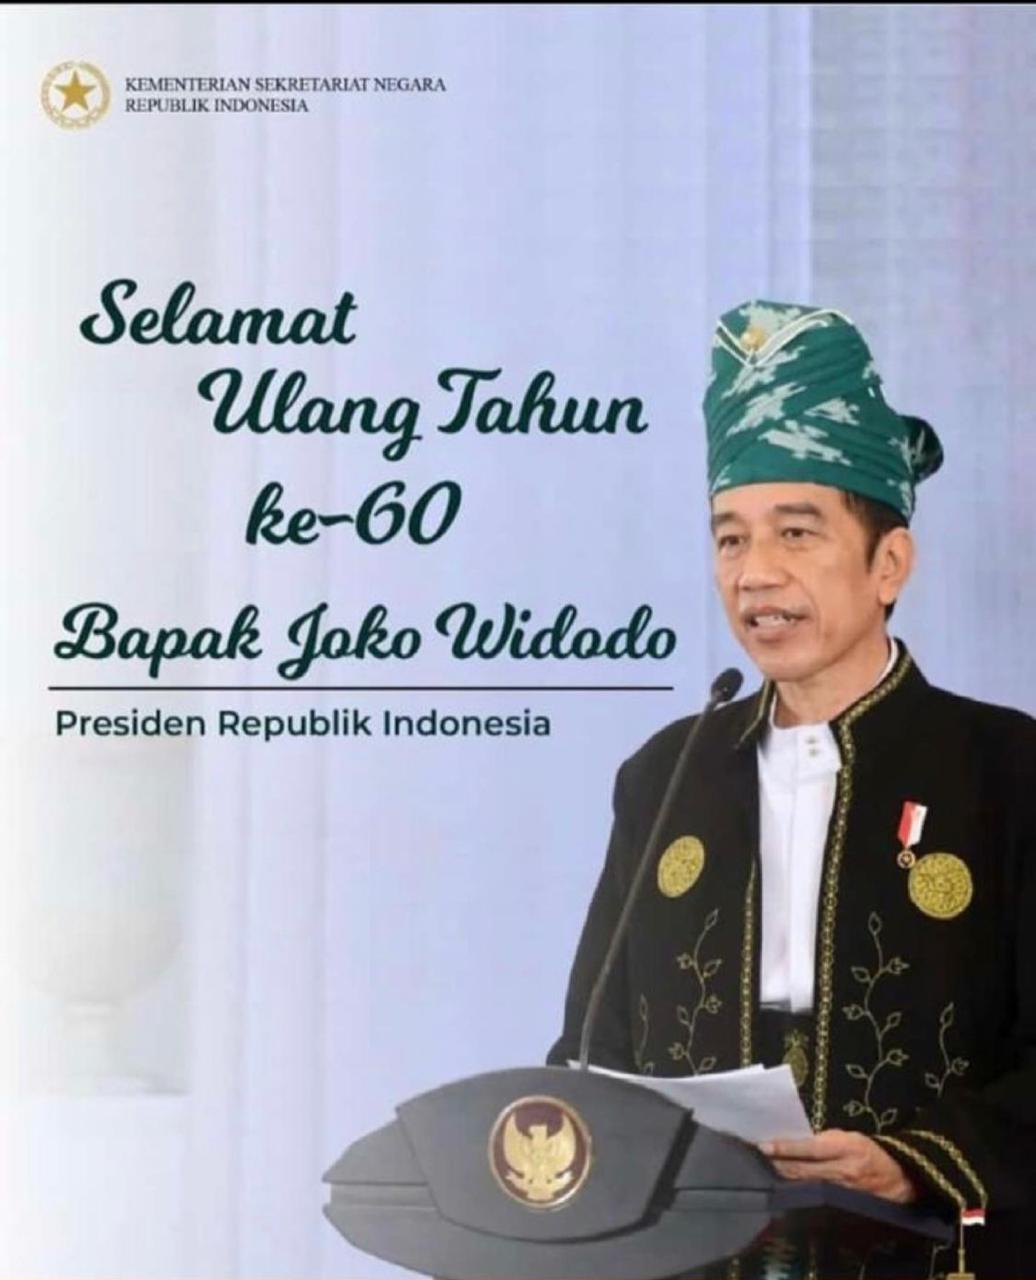 Berbagai Kalangan Ucapkan Doa dan Harapan Untuk Hari Ulang Tahun Jokowi ke-60 Hari Ini